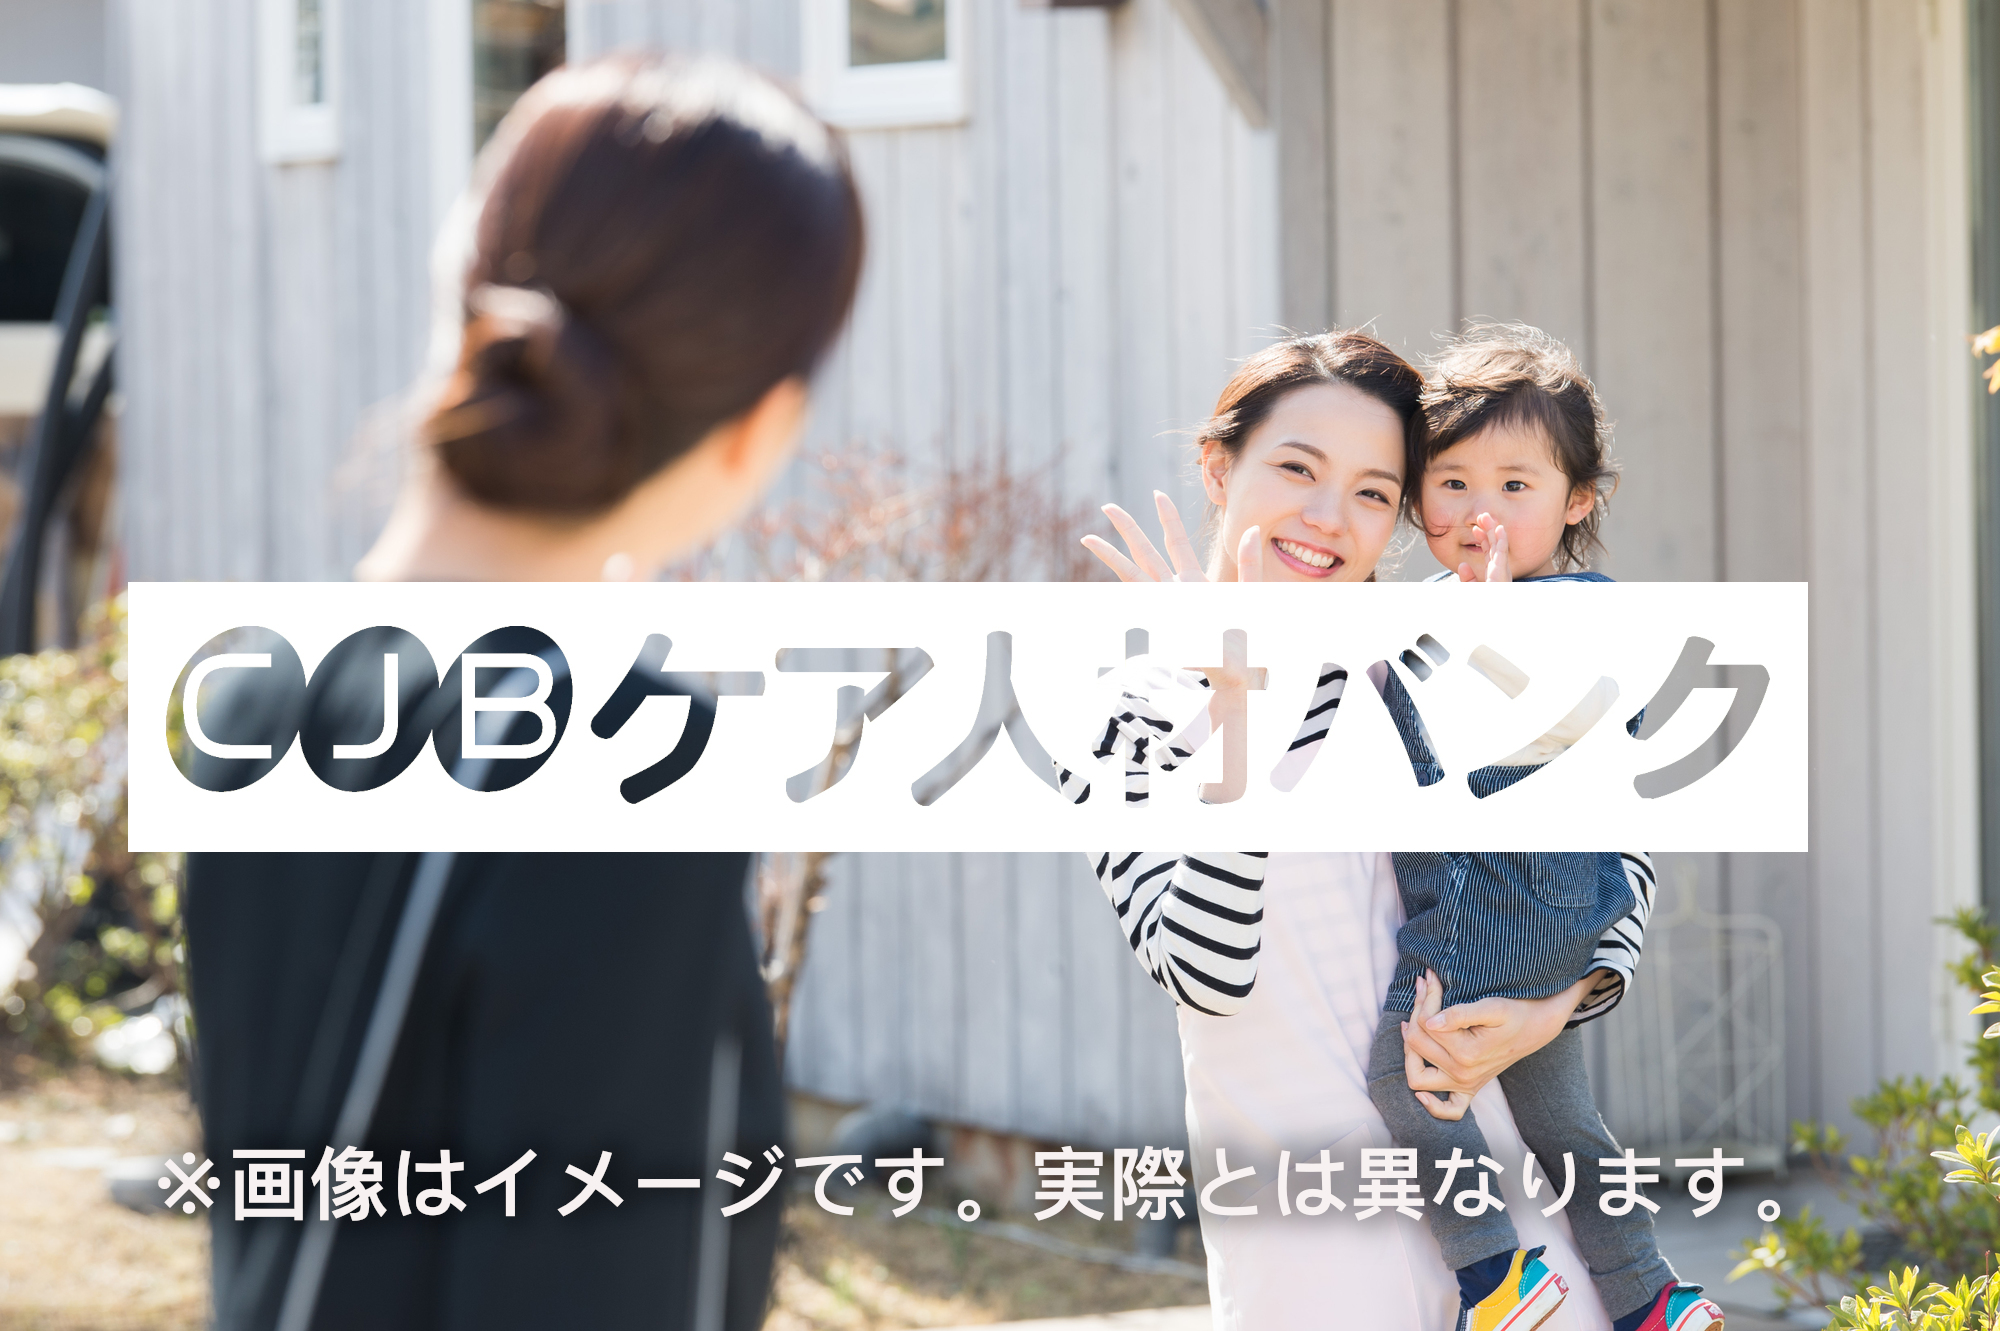  愛知県名古屋市緑区・児童発達支援常勤 児童発達支援管理責任者の非公開求人情報のイメージ画像